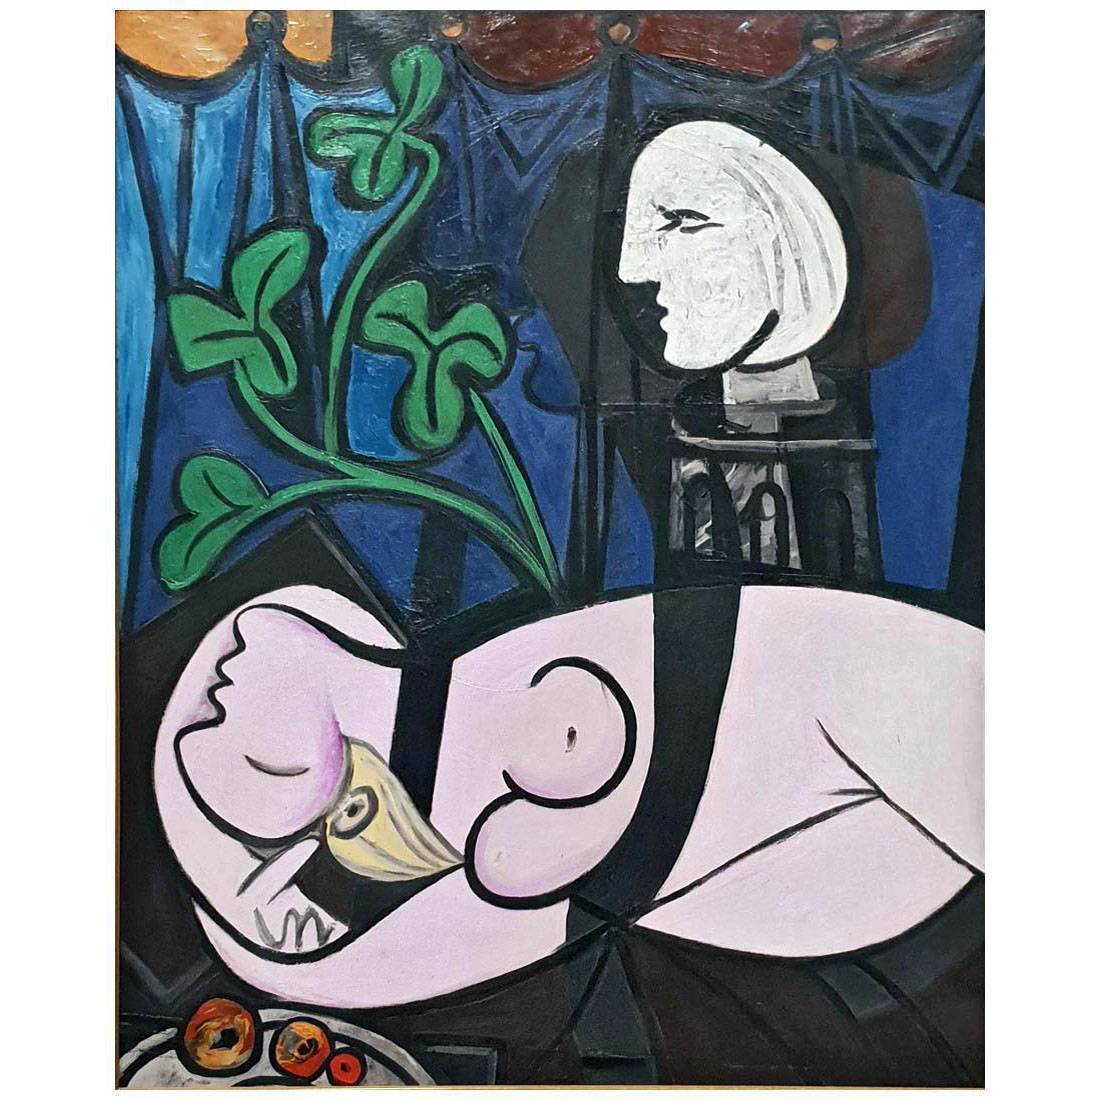 Pablo Picasso. Nu au plate de sculpteur. 1932. Tate Modern, London